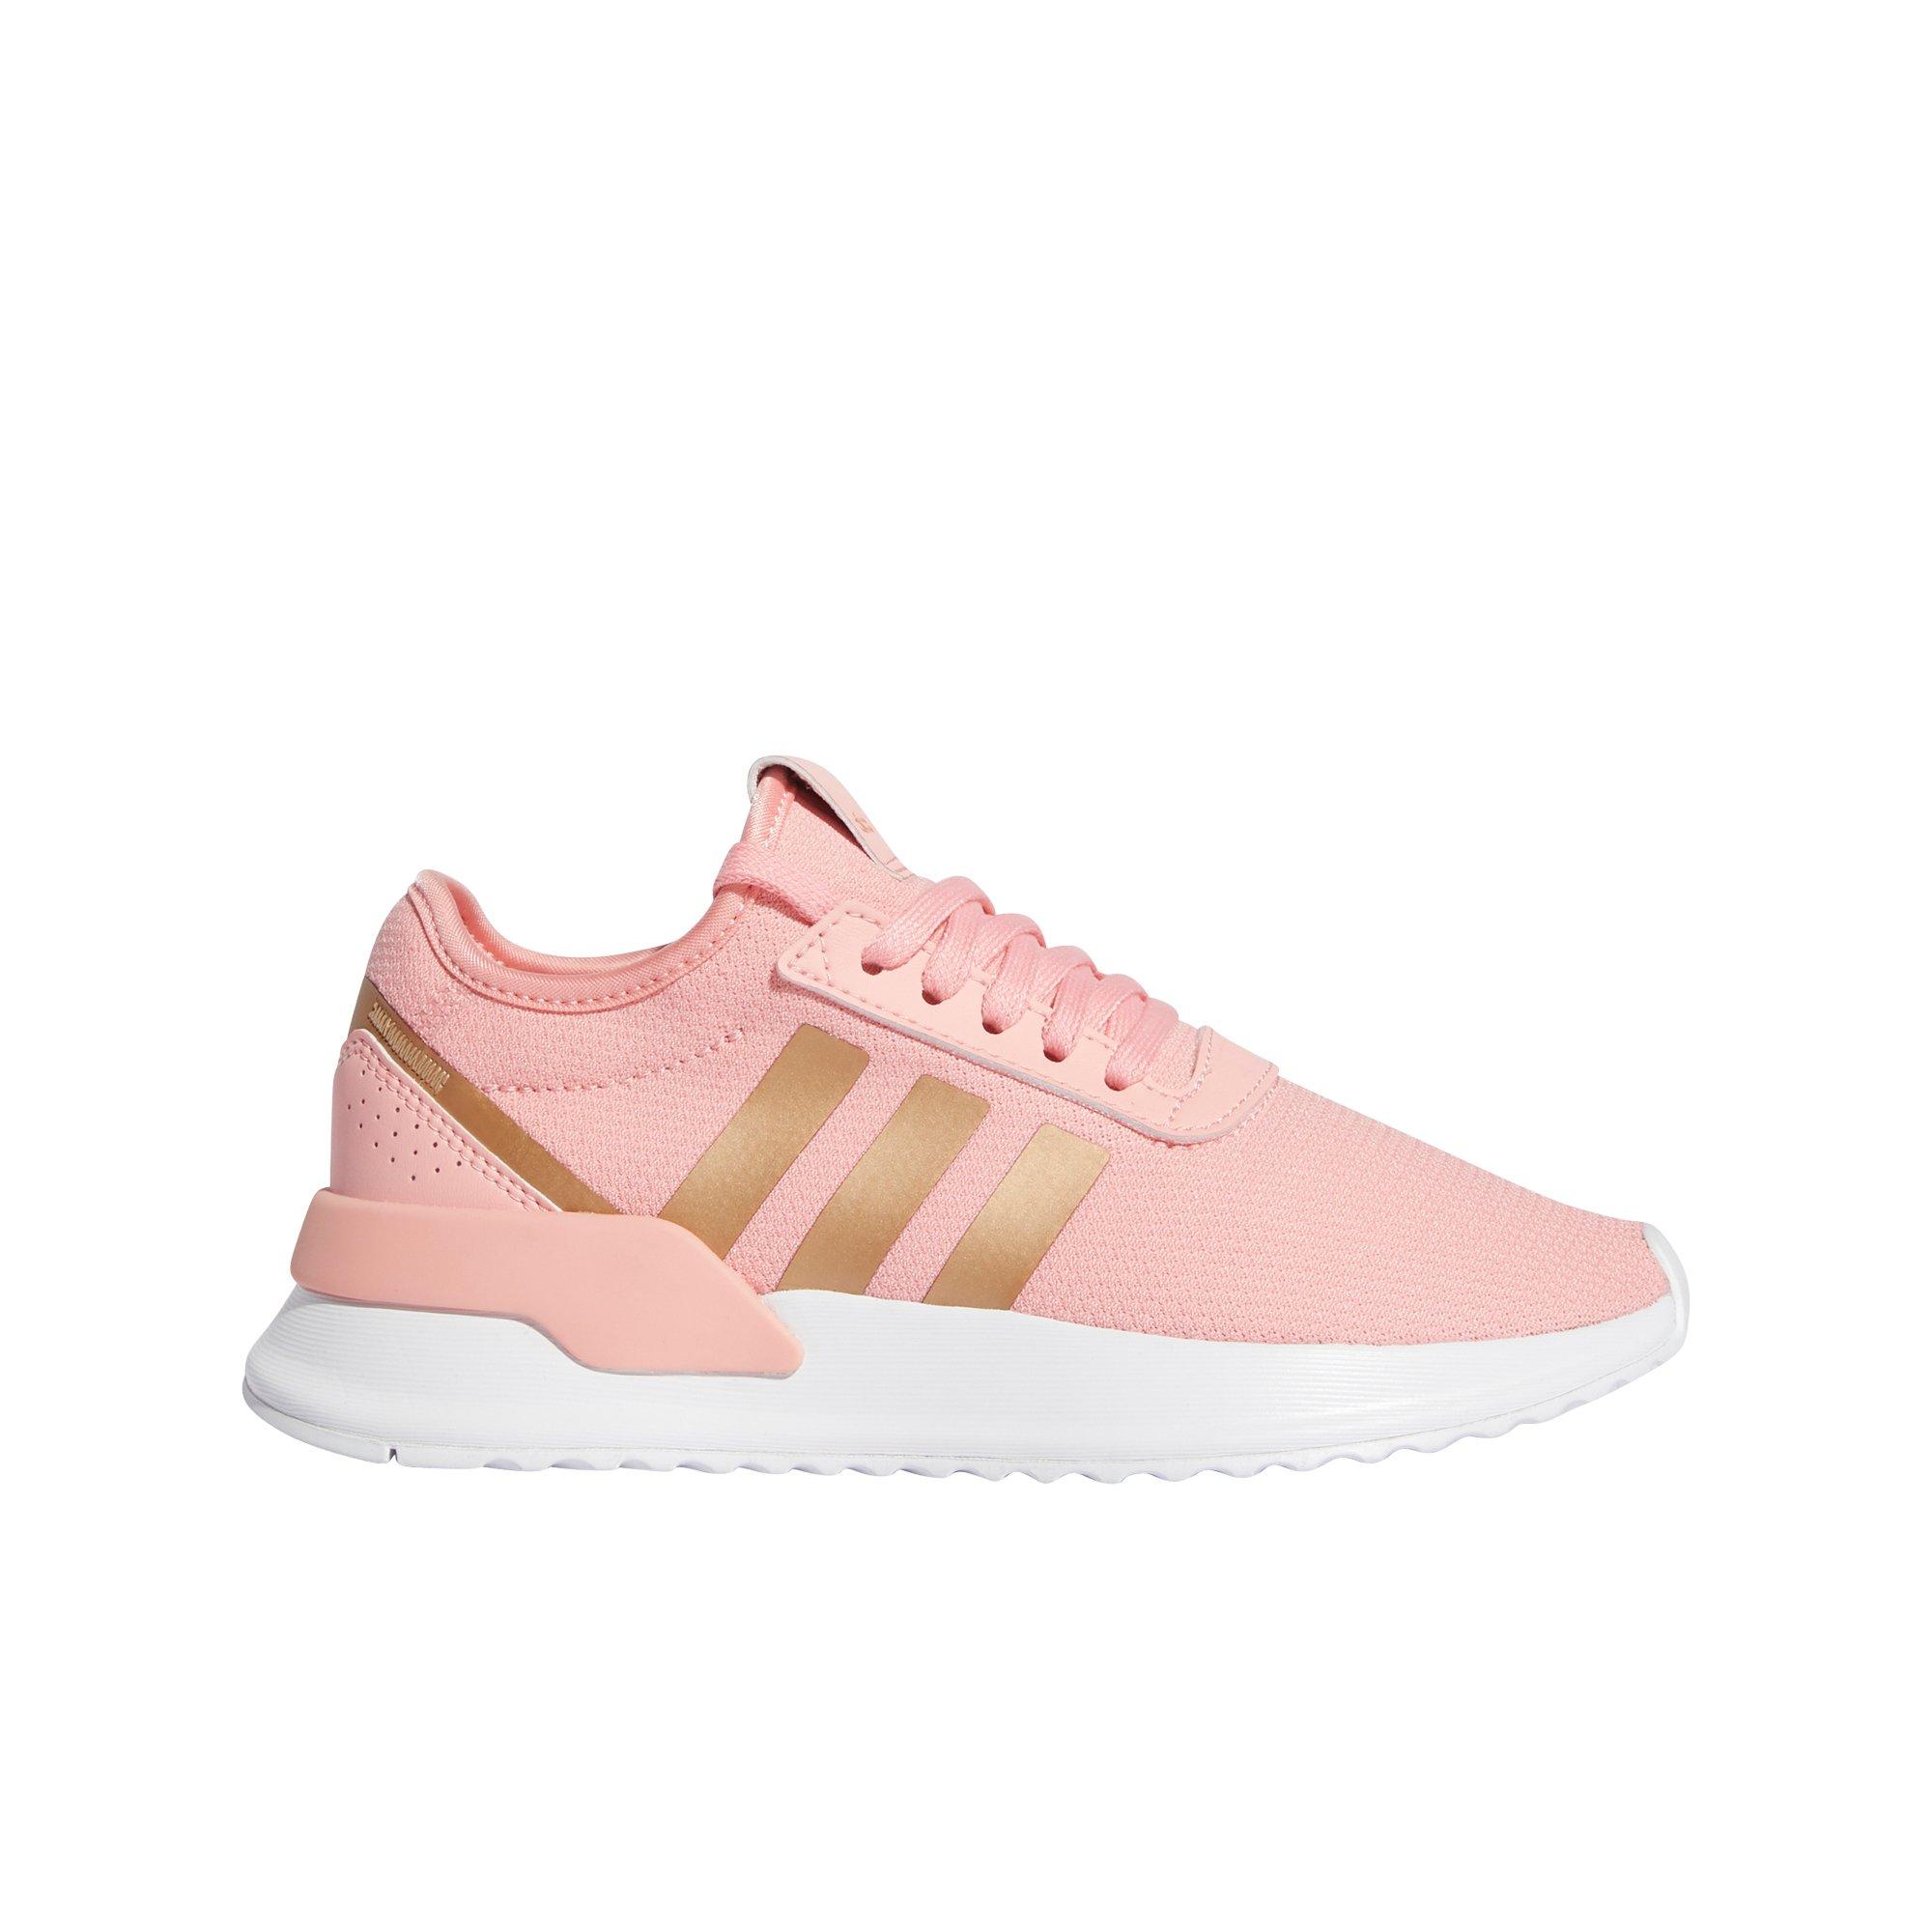 adidas rose pink shoes